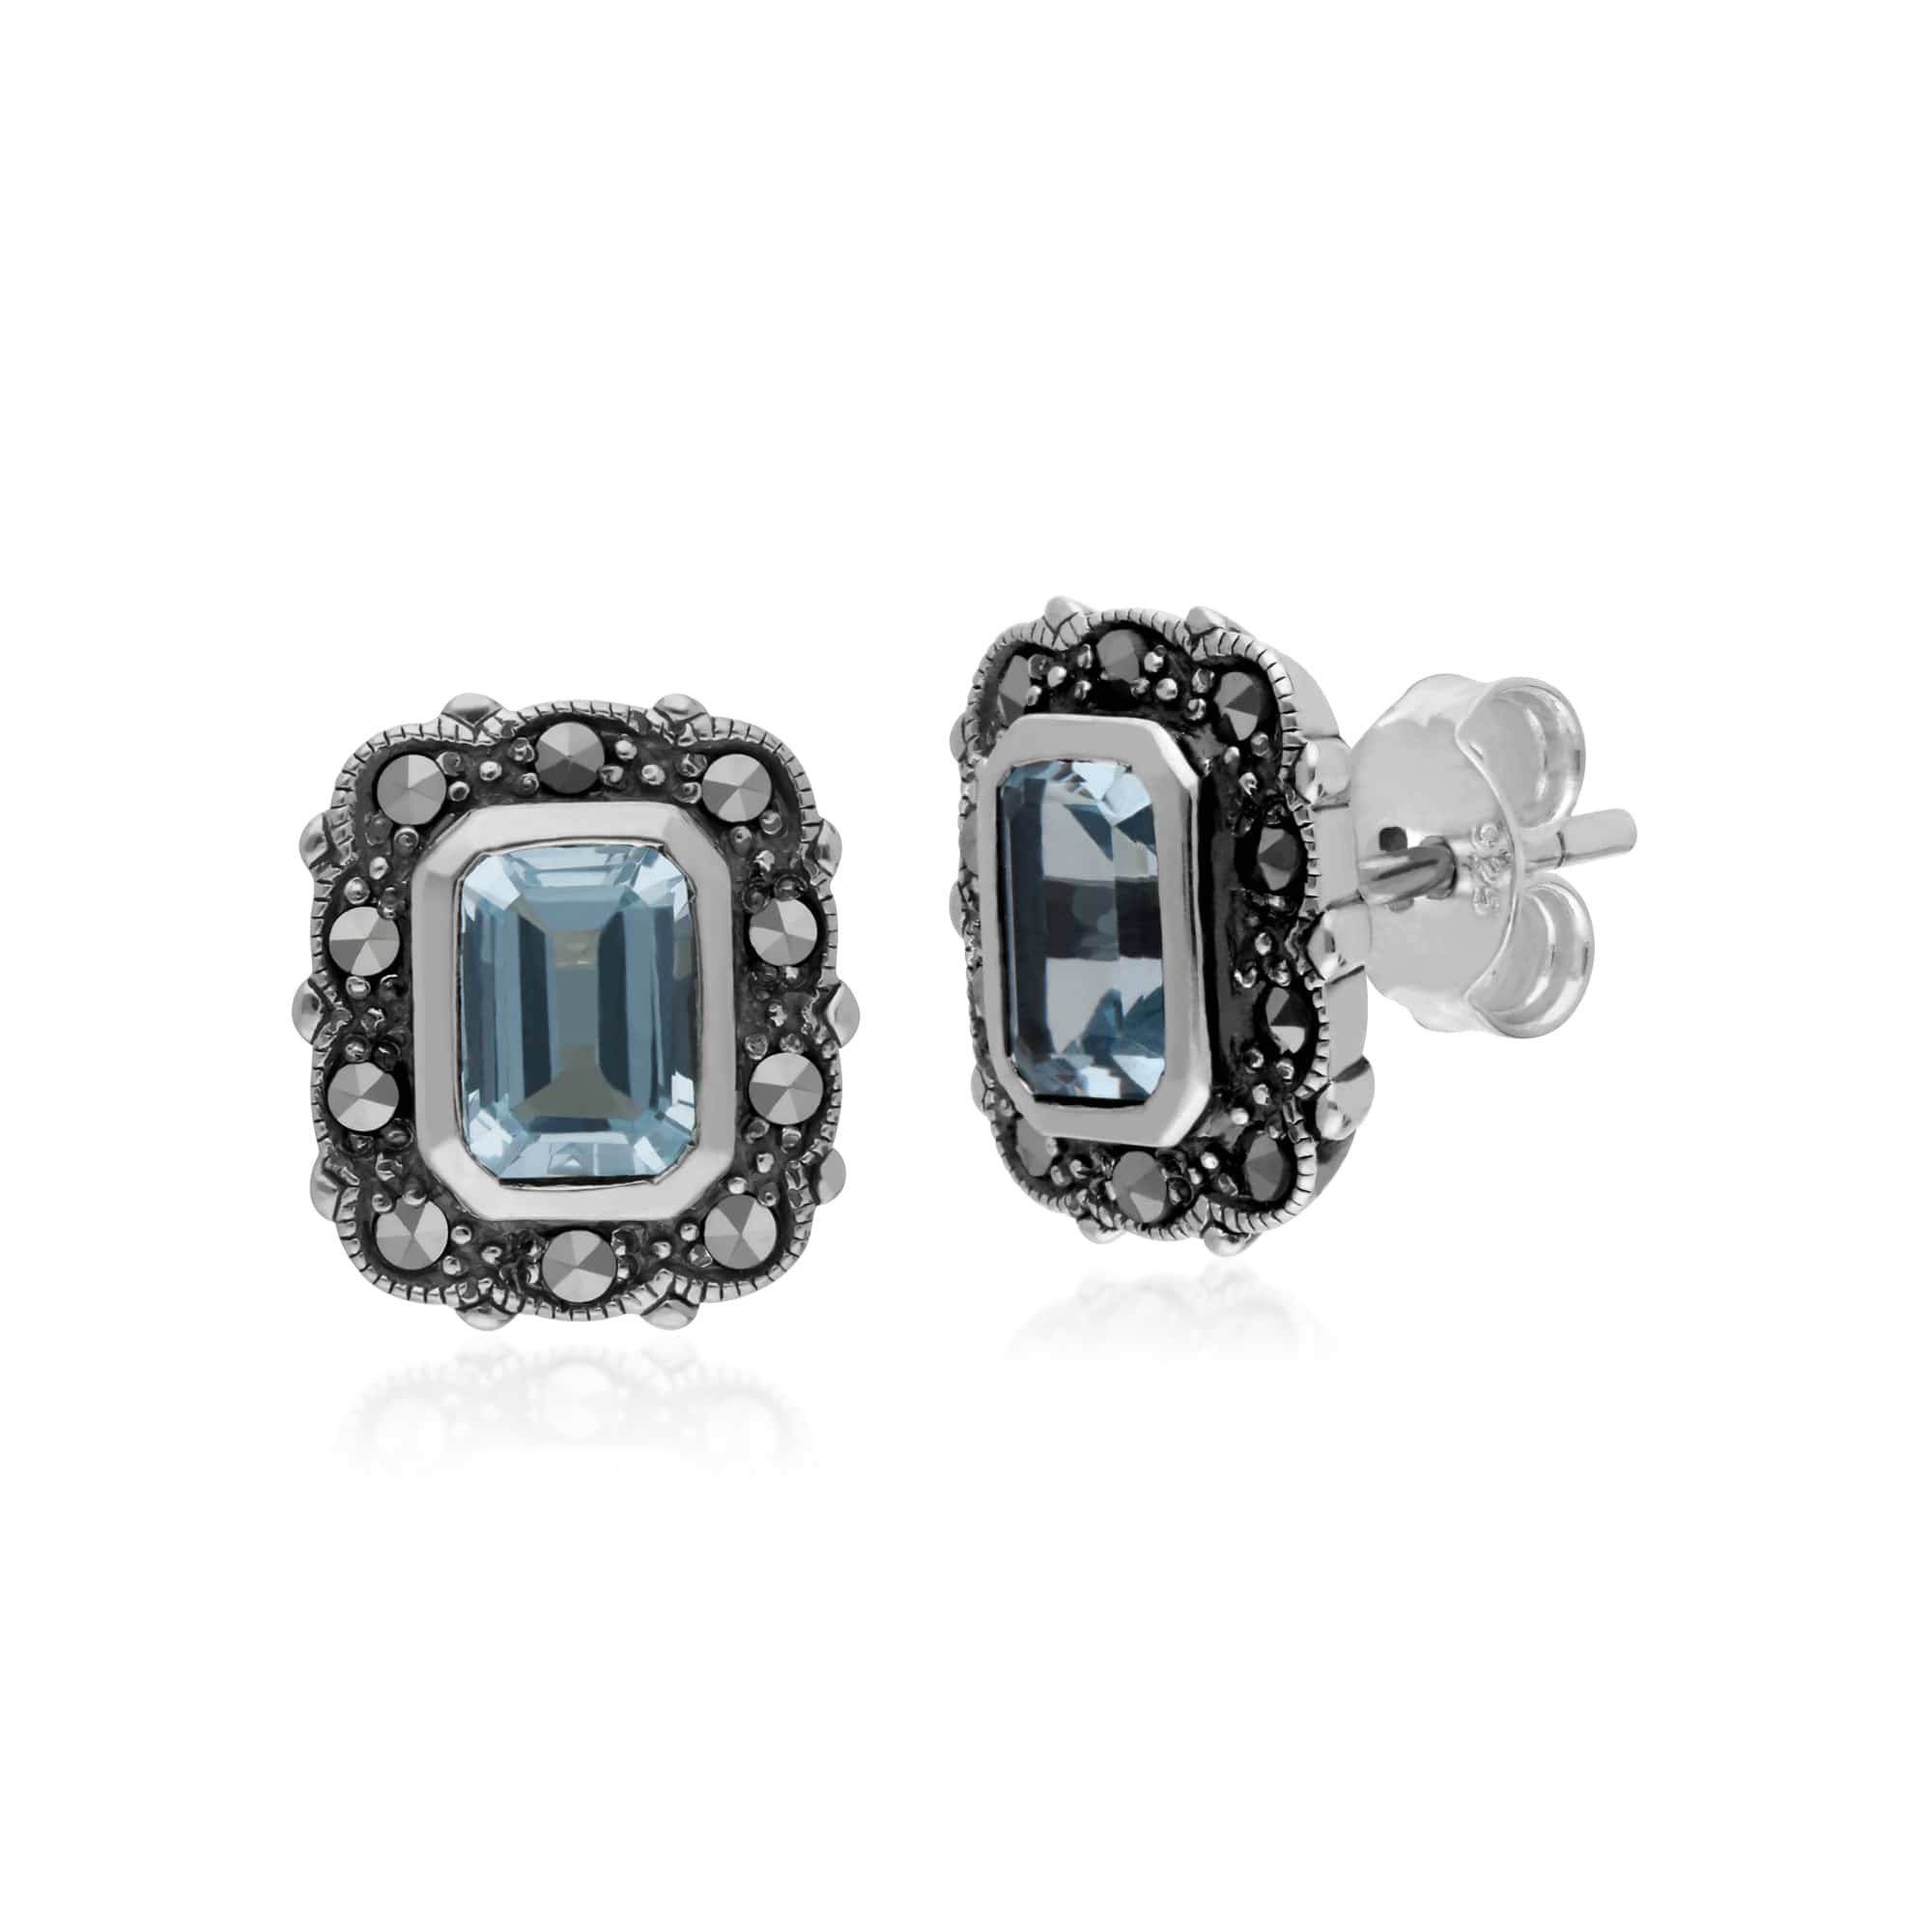 Gemondo Sterling Silver Blue Topaz & Marcasite Octagon Art Nouveau Earrings - Gemondo